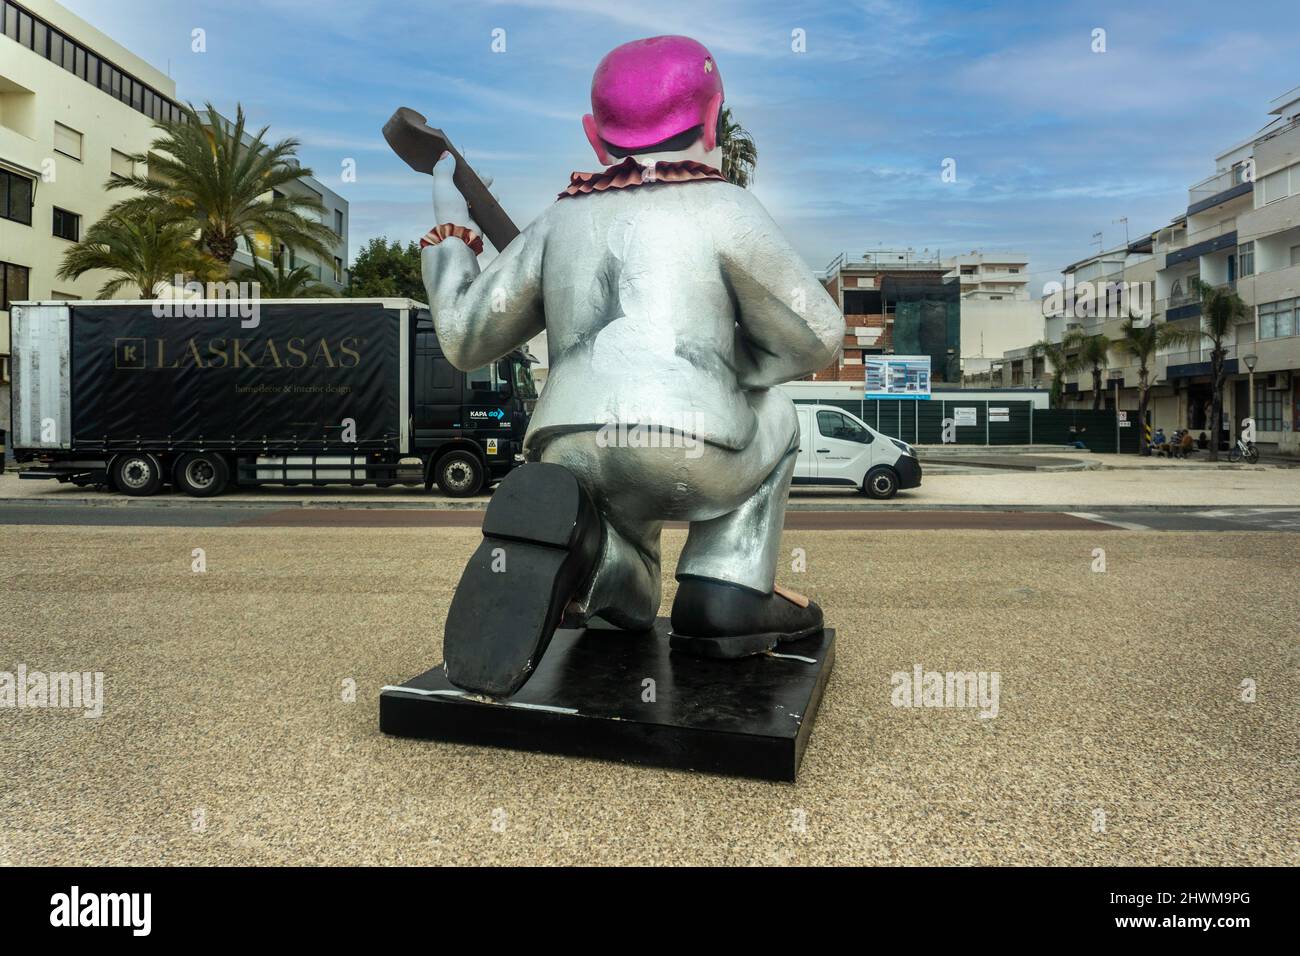 Carnaval Quarteira, un clown de Pierrot de grande taille sur le front de mer à Quarteira, Portugal. Banque D'Images